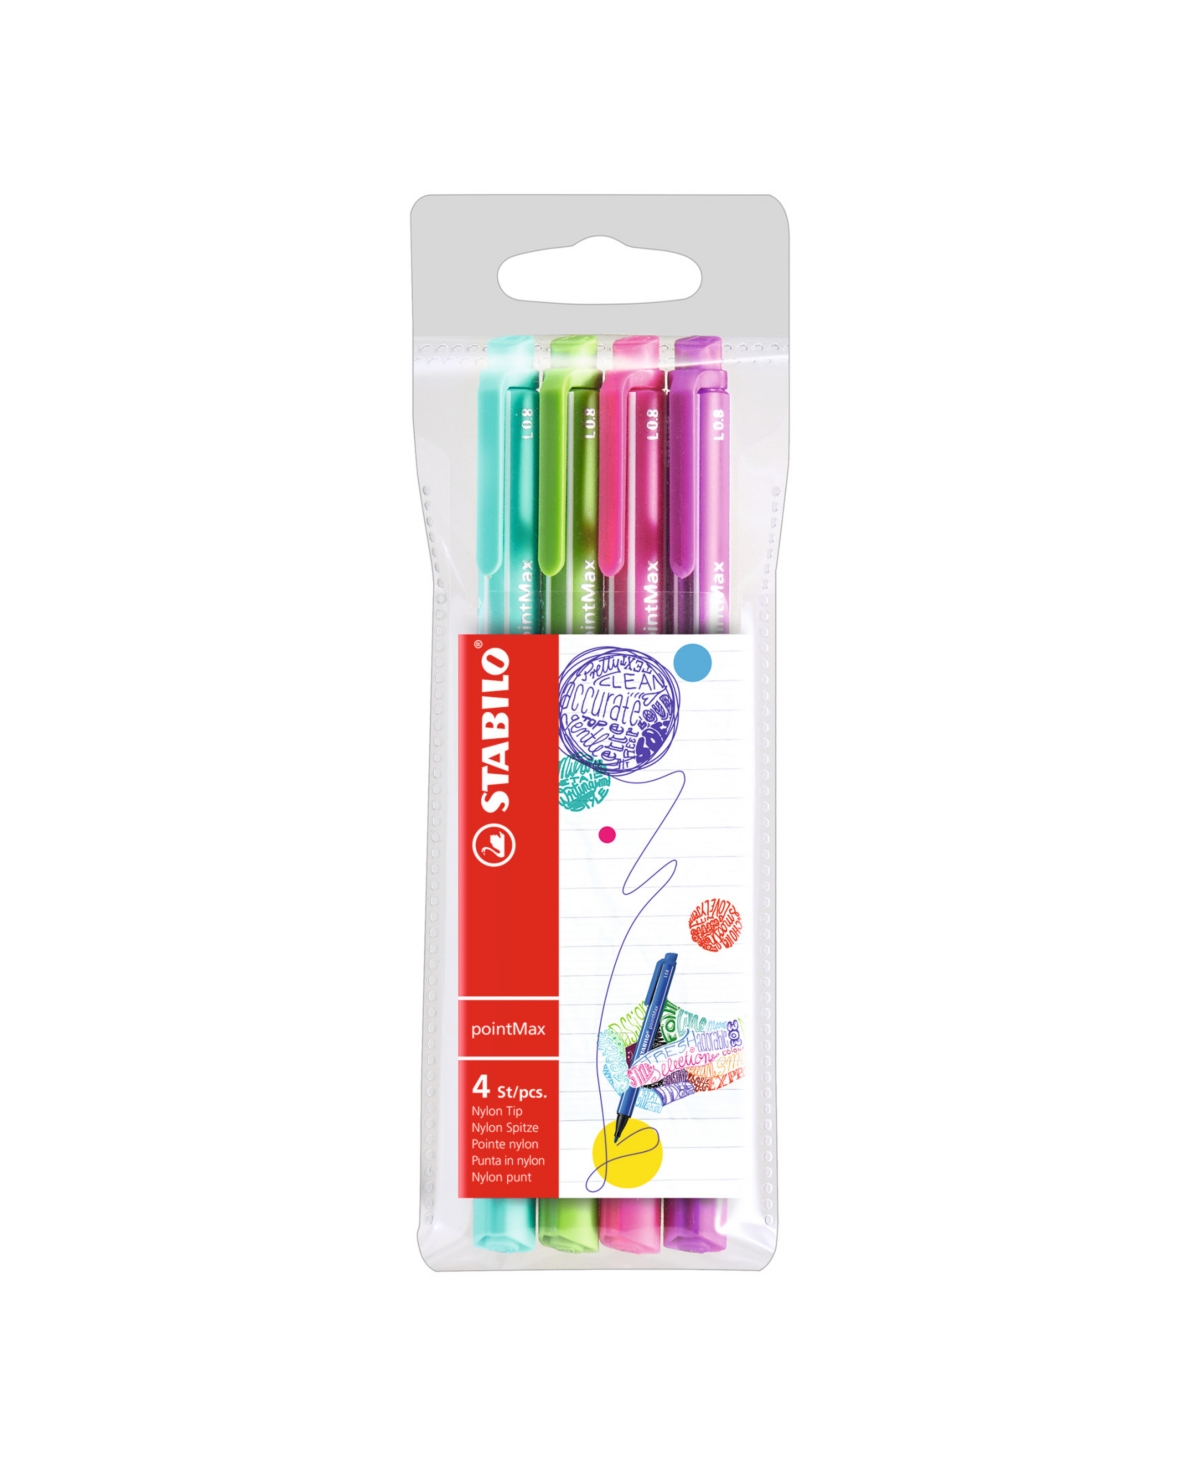 pointMax Color Pen Wallet Set, 4 Pieces - Multi